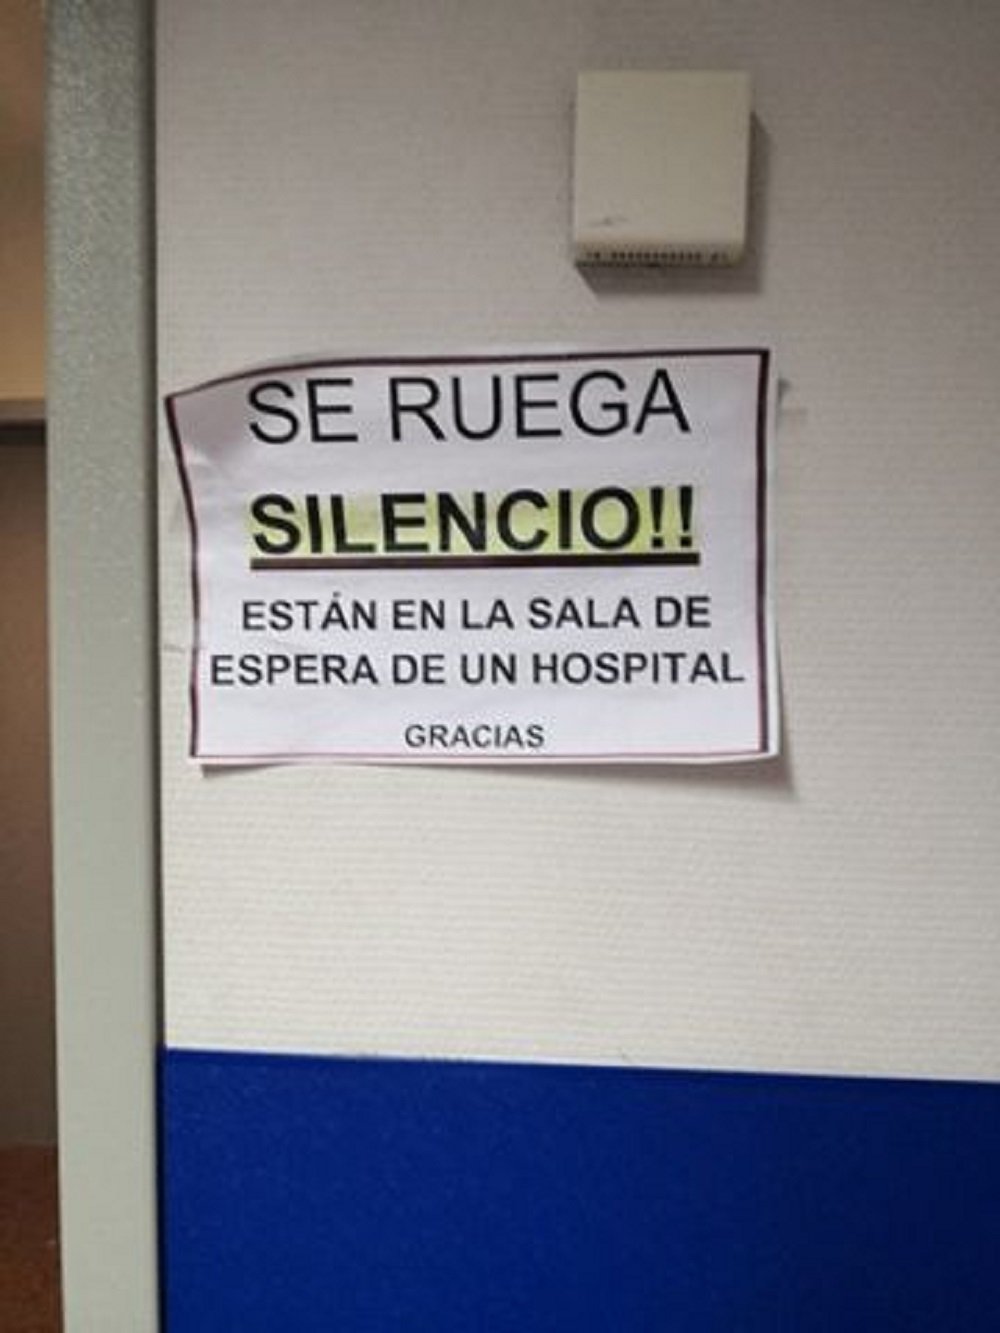 Substitució lingüística a Mallorca: Un hospital ho retola tot en castellà